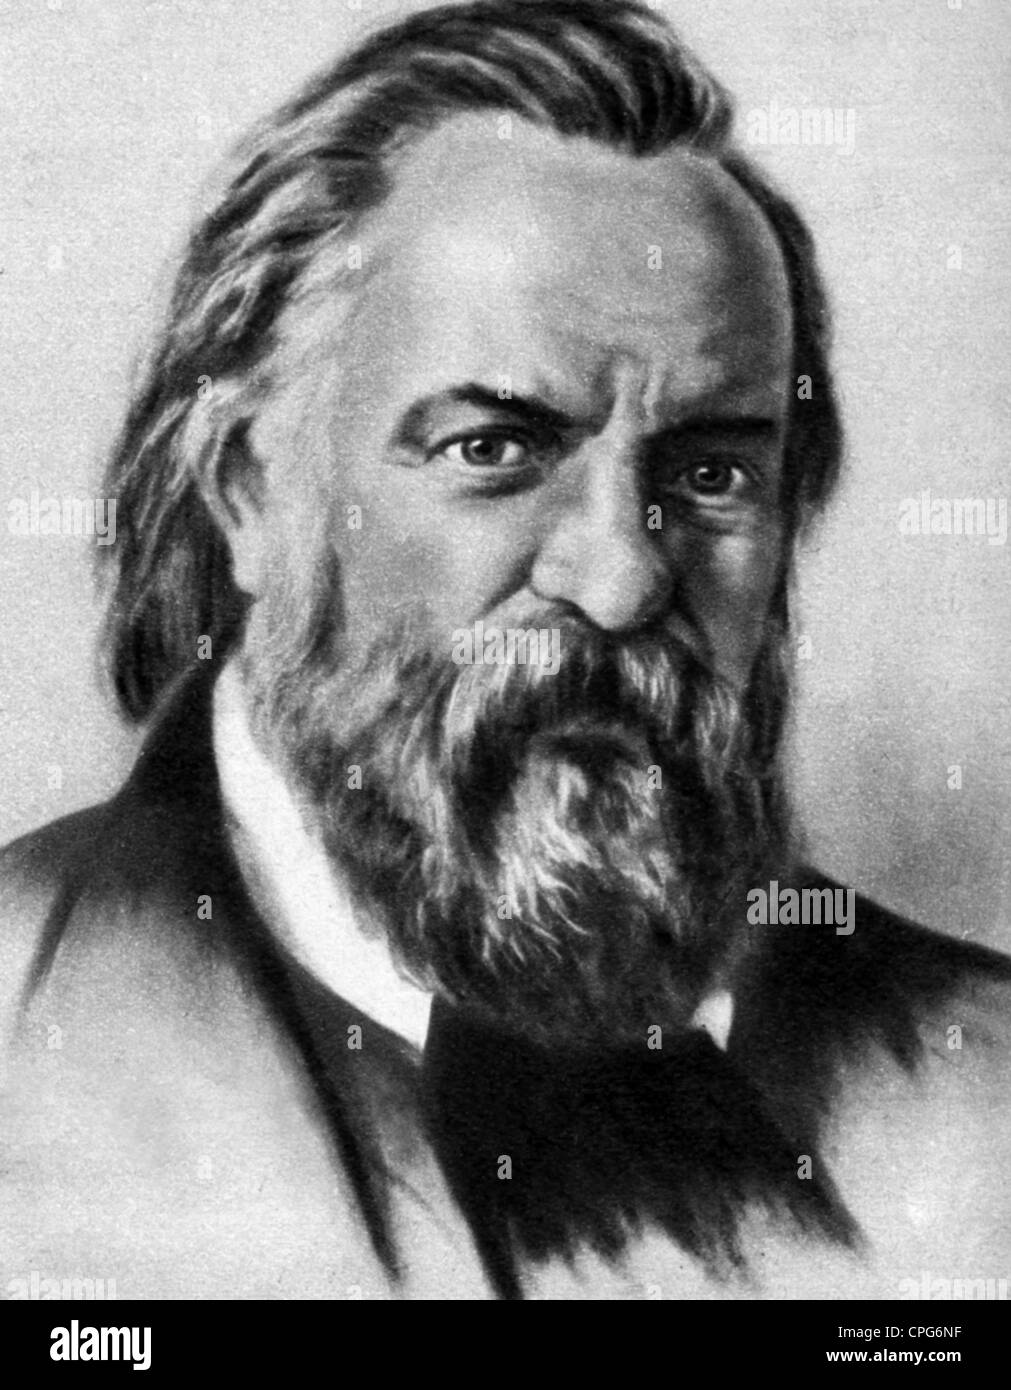 Herzen, Alexander, 6.4.1812 - 21.1.1870, russischer Autor/Schriftsteller, Revolutionär, Porträt, Zeichnung, 19. Jahrhundert, Stockfoto